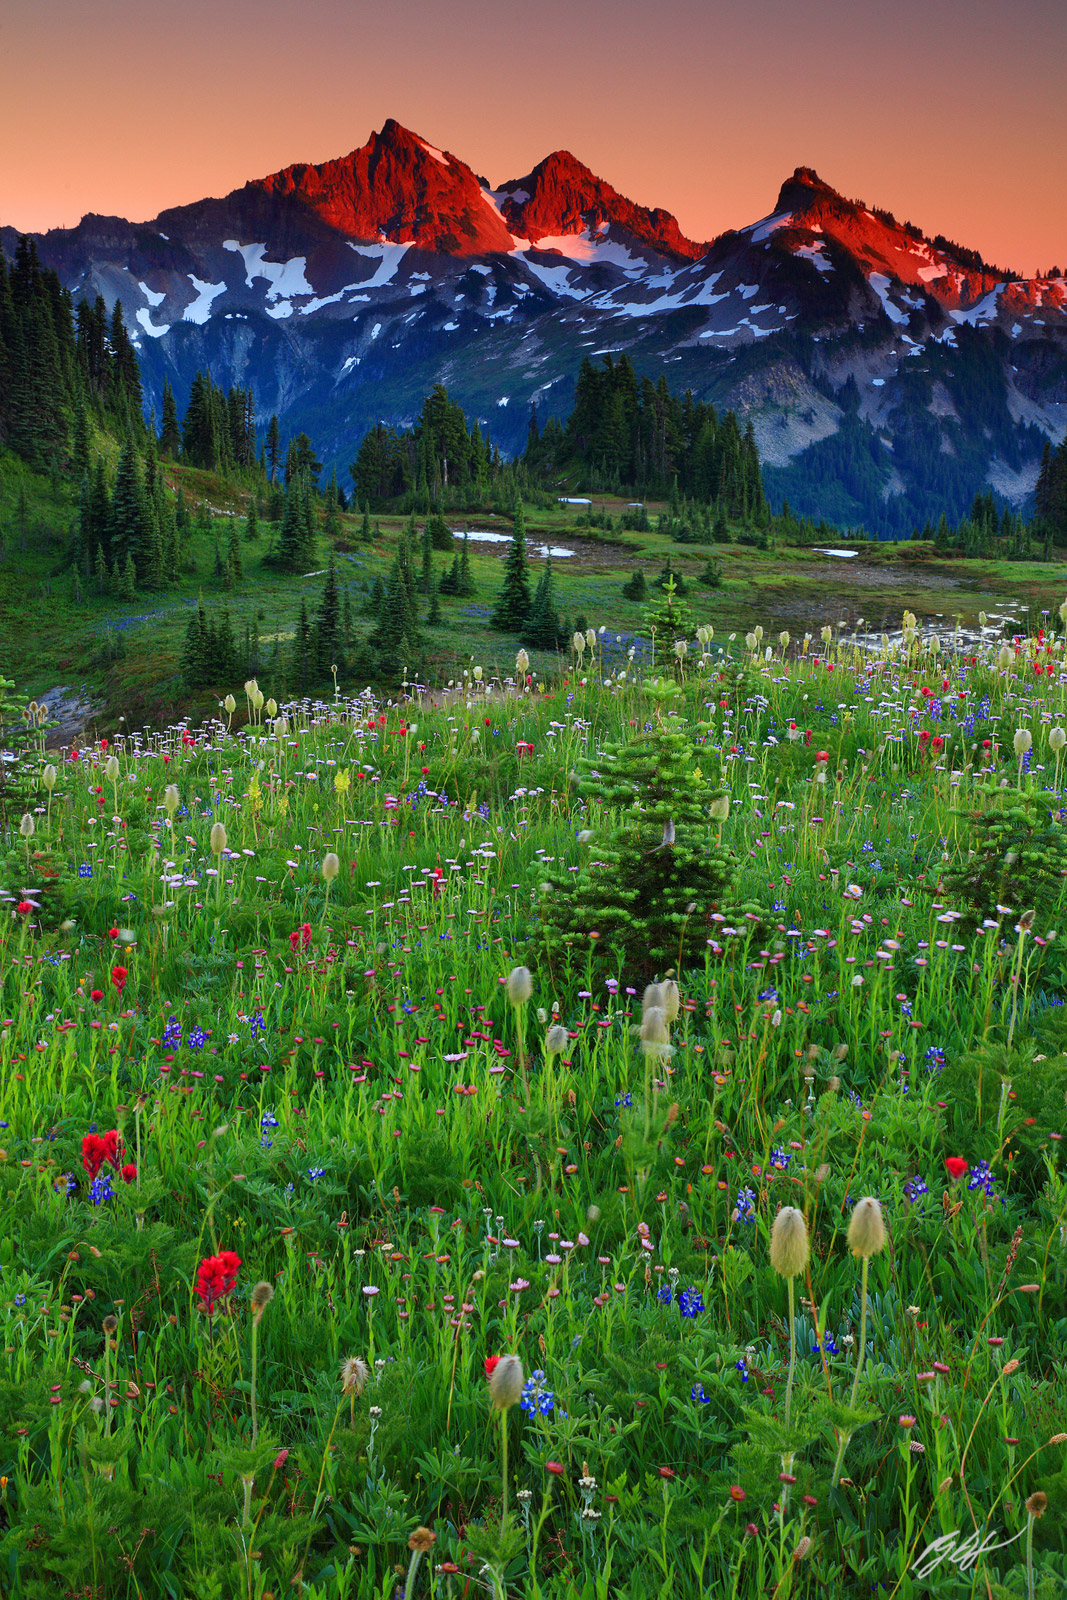 Sunset Wildflowers and the Tatoosh Range from Mazama Ridge, Mt Rainier National Park in Washington